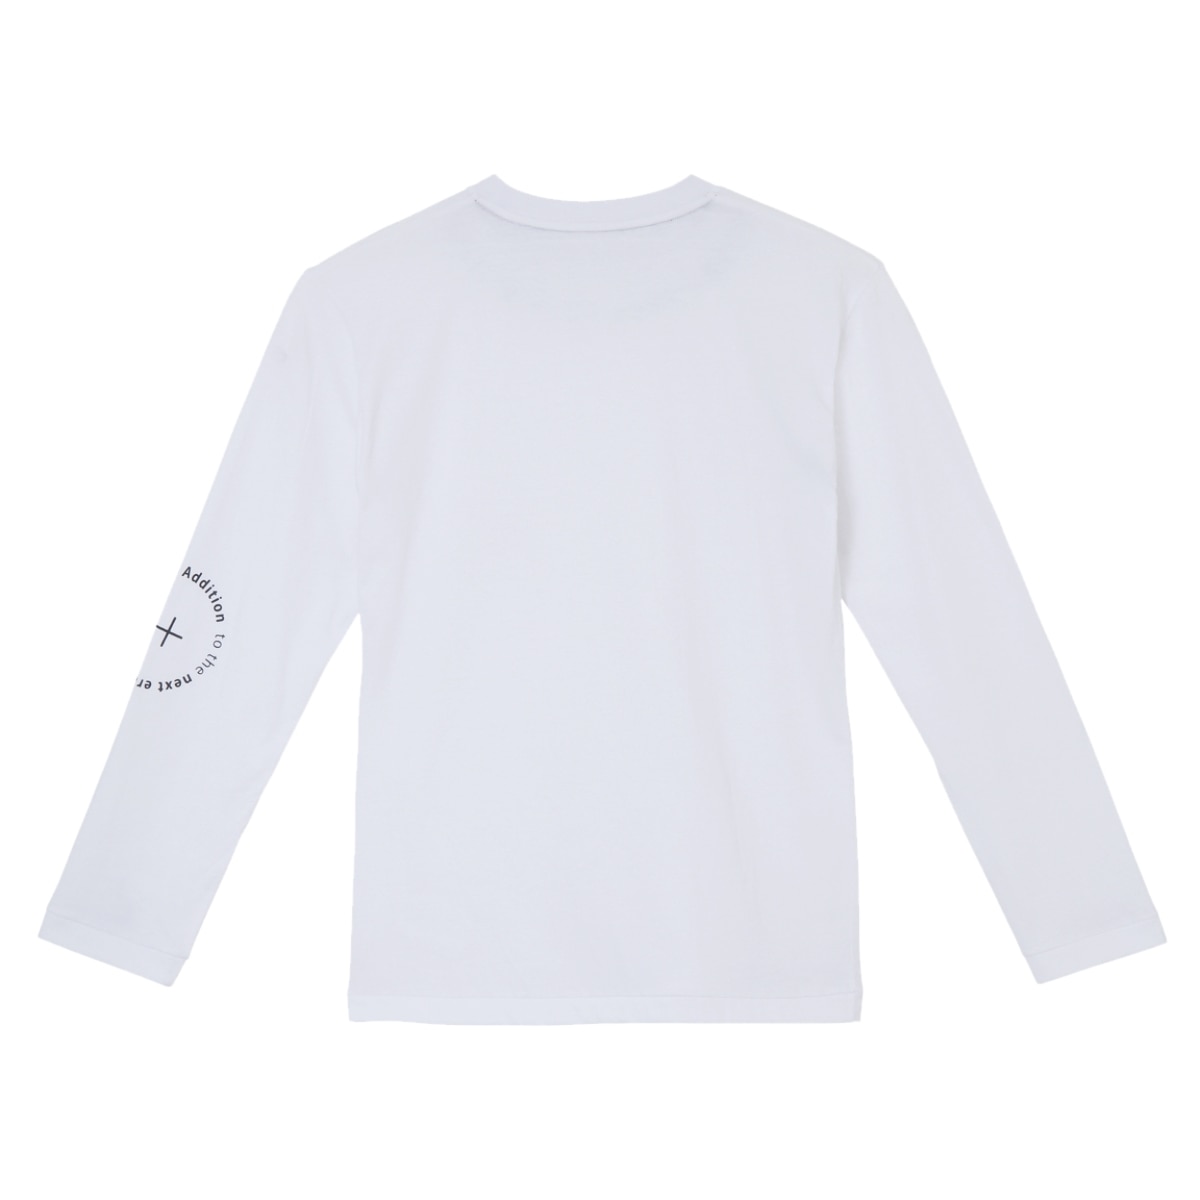 【add.03】BASIC LS TEE ロングスリーブTシャツ メンズ